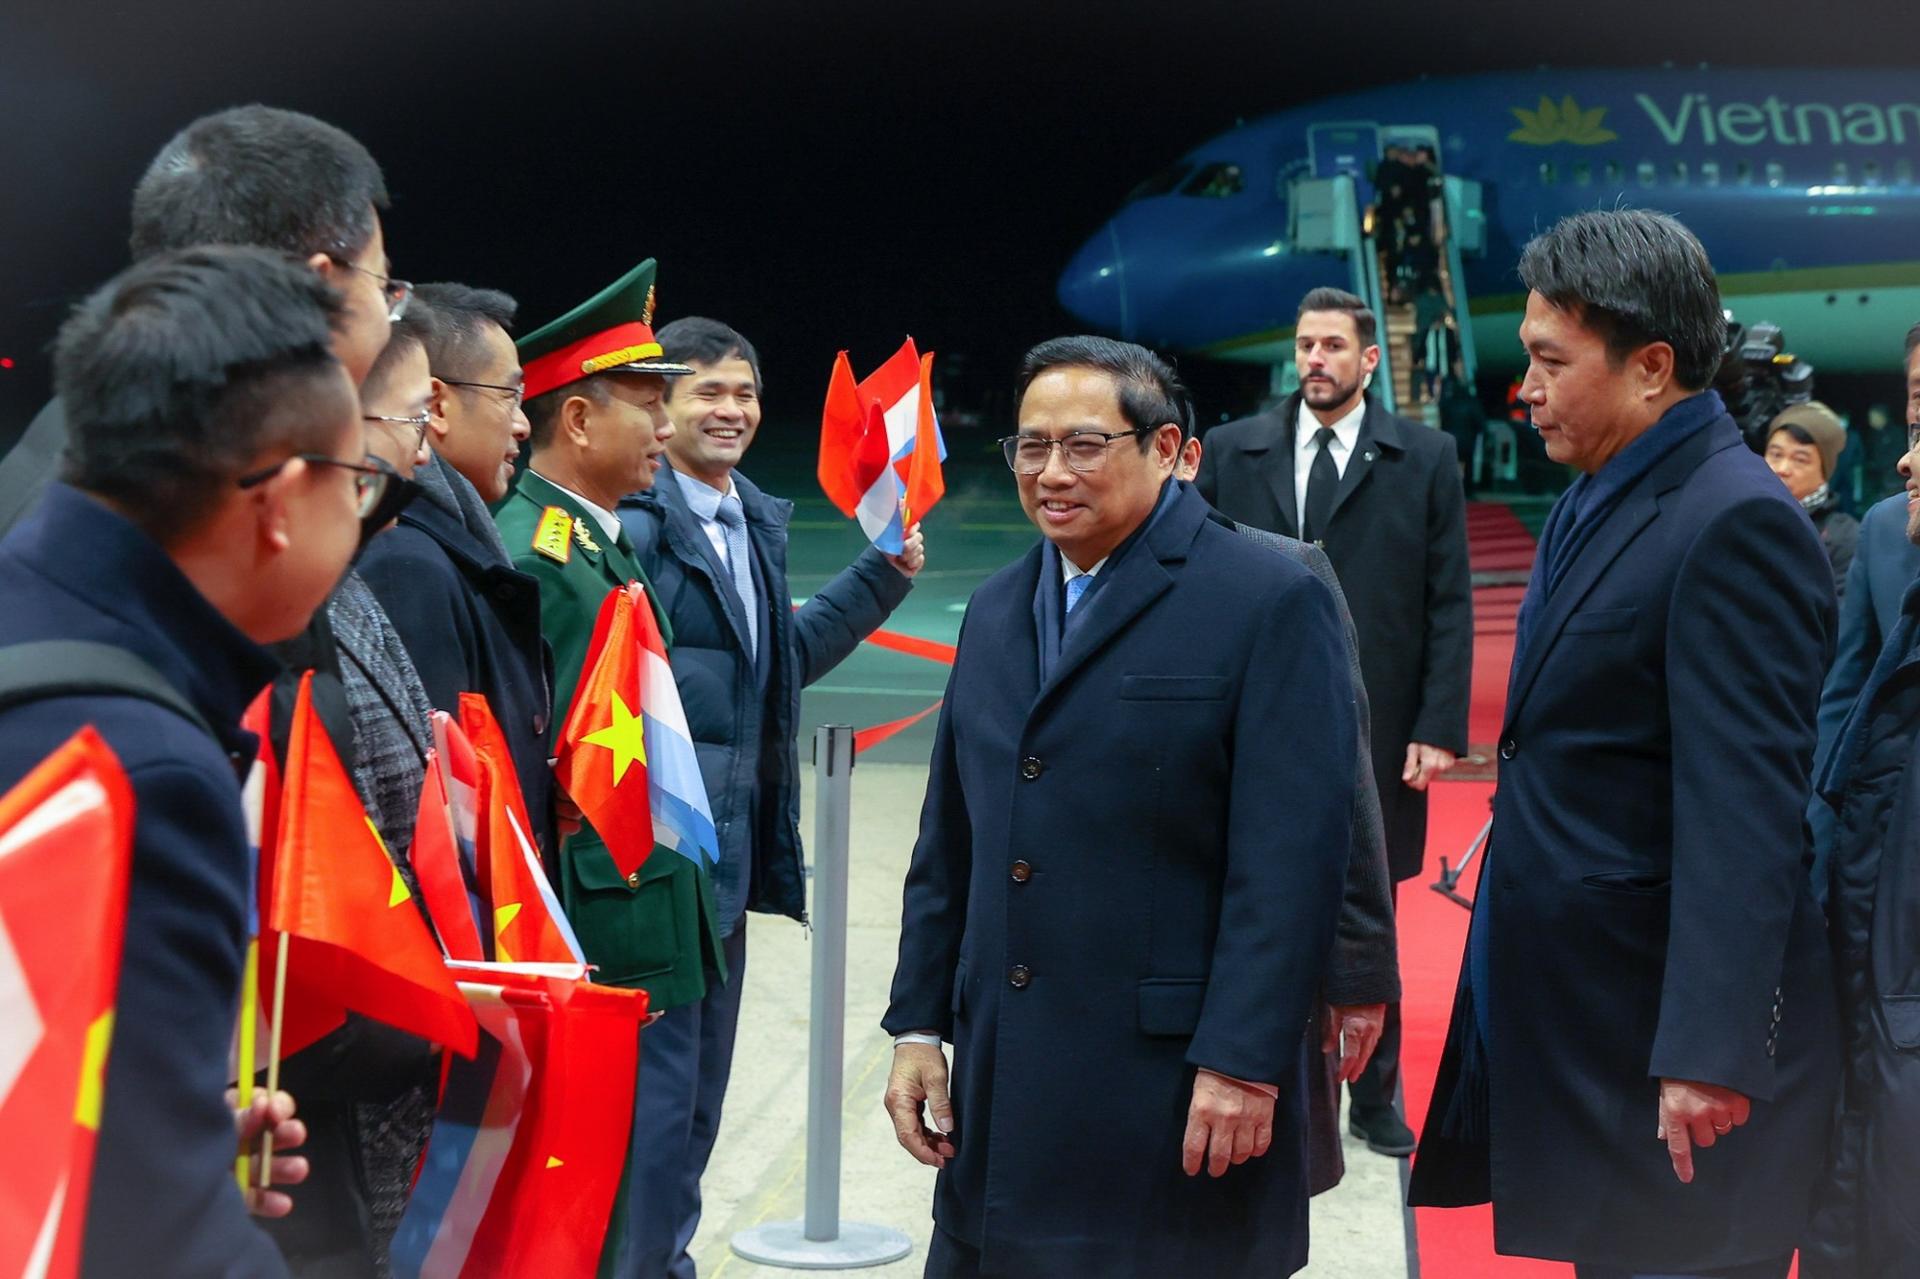 Chuyến thăm của Thủ tướng Phạm Minh Chính làm sâu sắc thêm quan hệ hữu nghị và hợp tác với Luxembourg, mở rộng hợp tác trên các lĩnh vực thế mạnh của mỗi nước, phù hợp với nhu cầu phát triển của Việt Nam như công nghệ dược phẩm, logistics...